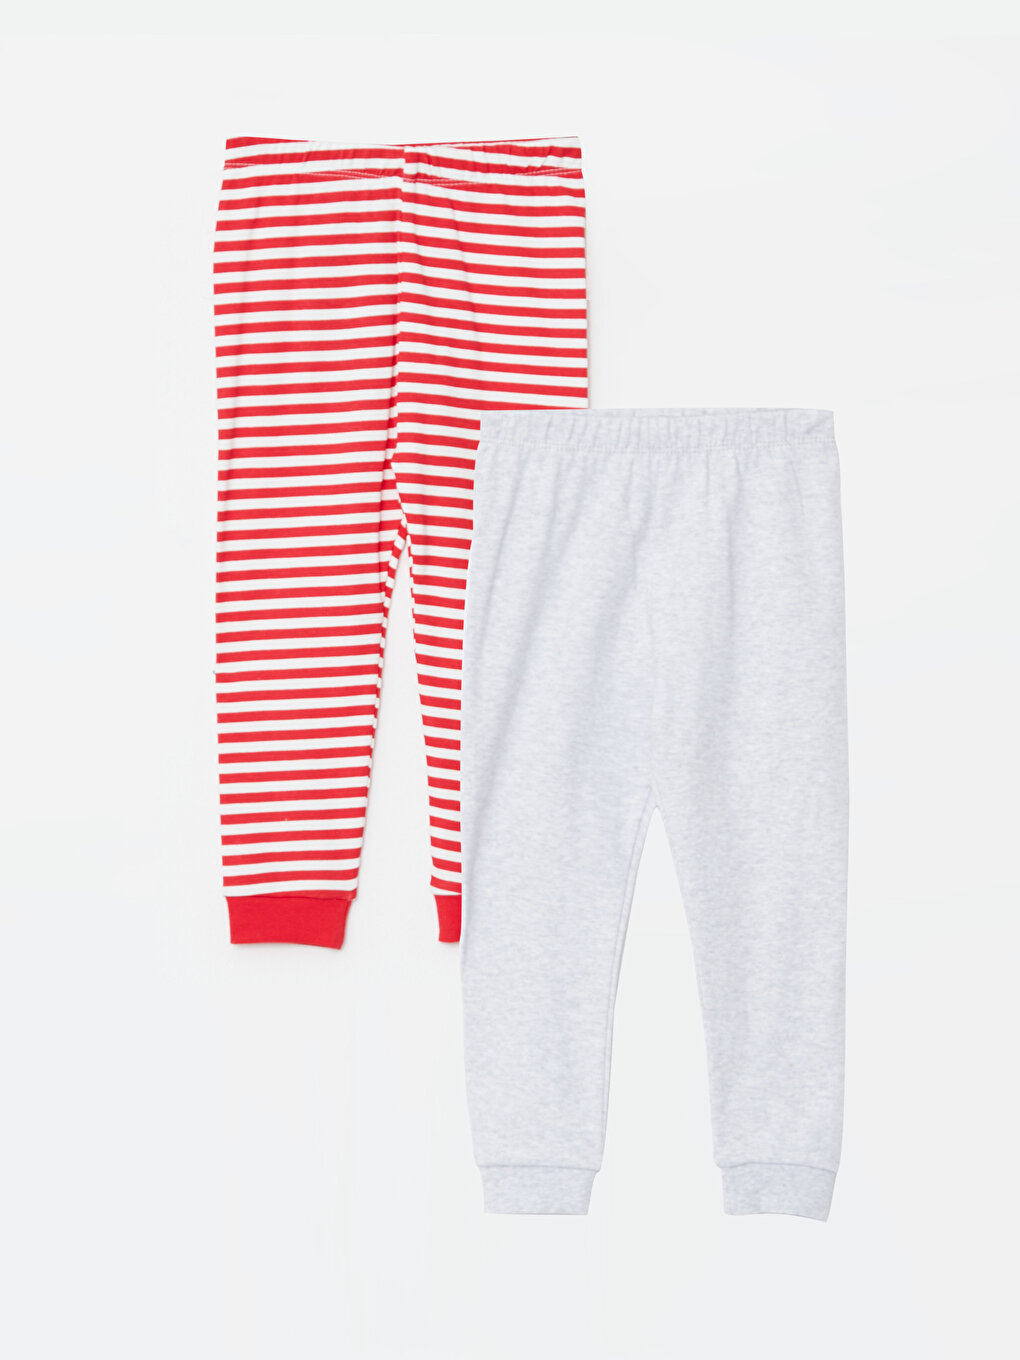 Funnycokid Girl Pajama Pants Kid Fleece Sleepwear India | Ubuy